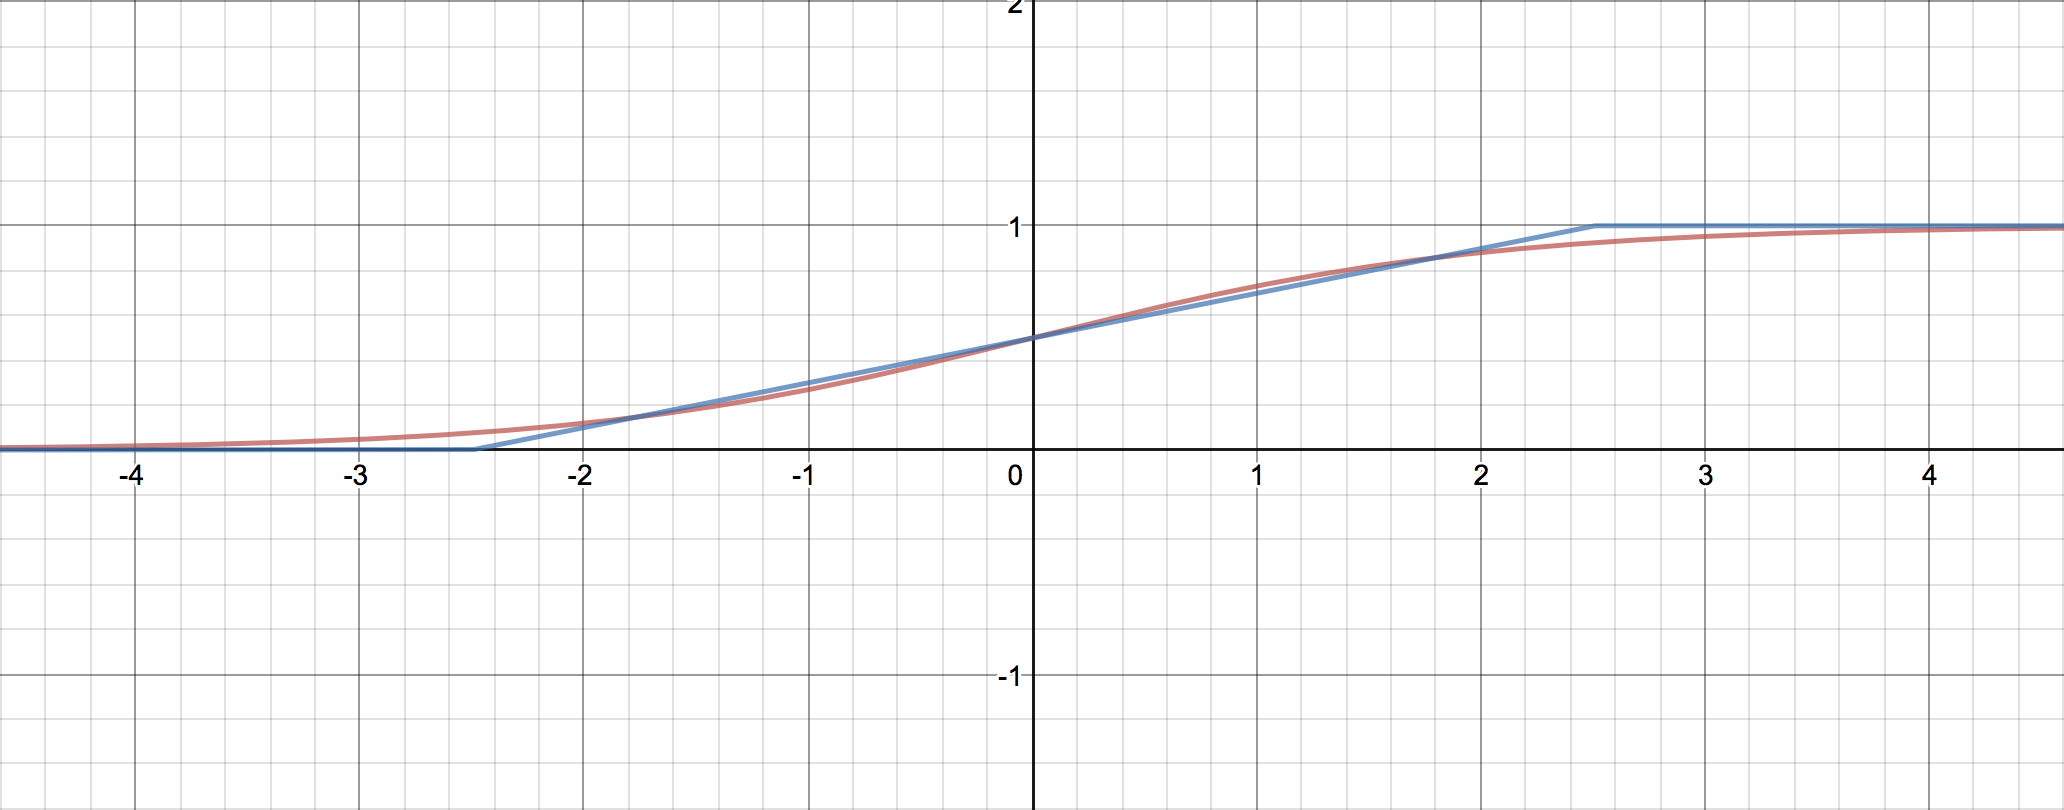 標準シグモイド関数とmax(0, min(1, 1/2 + x/5))